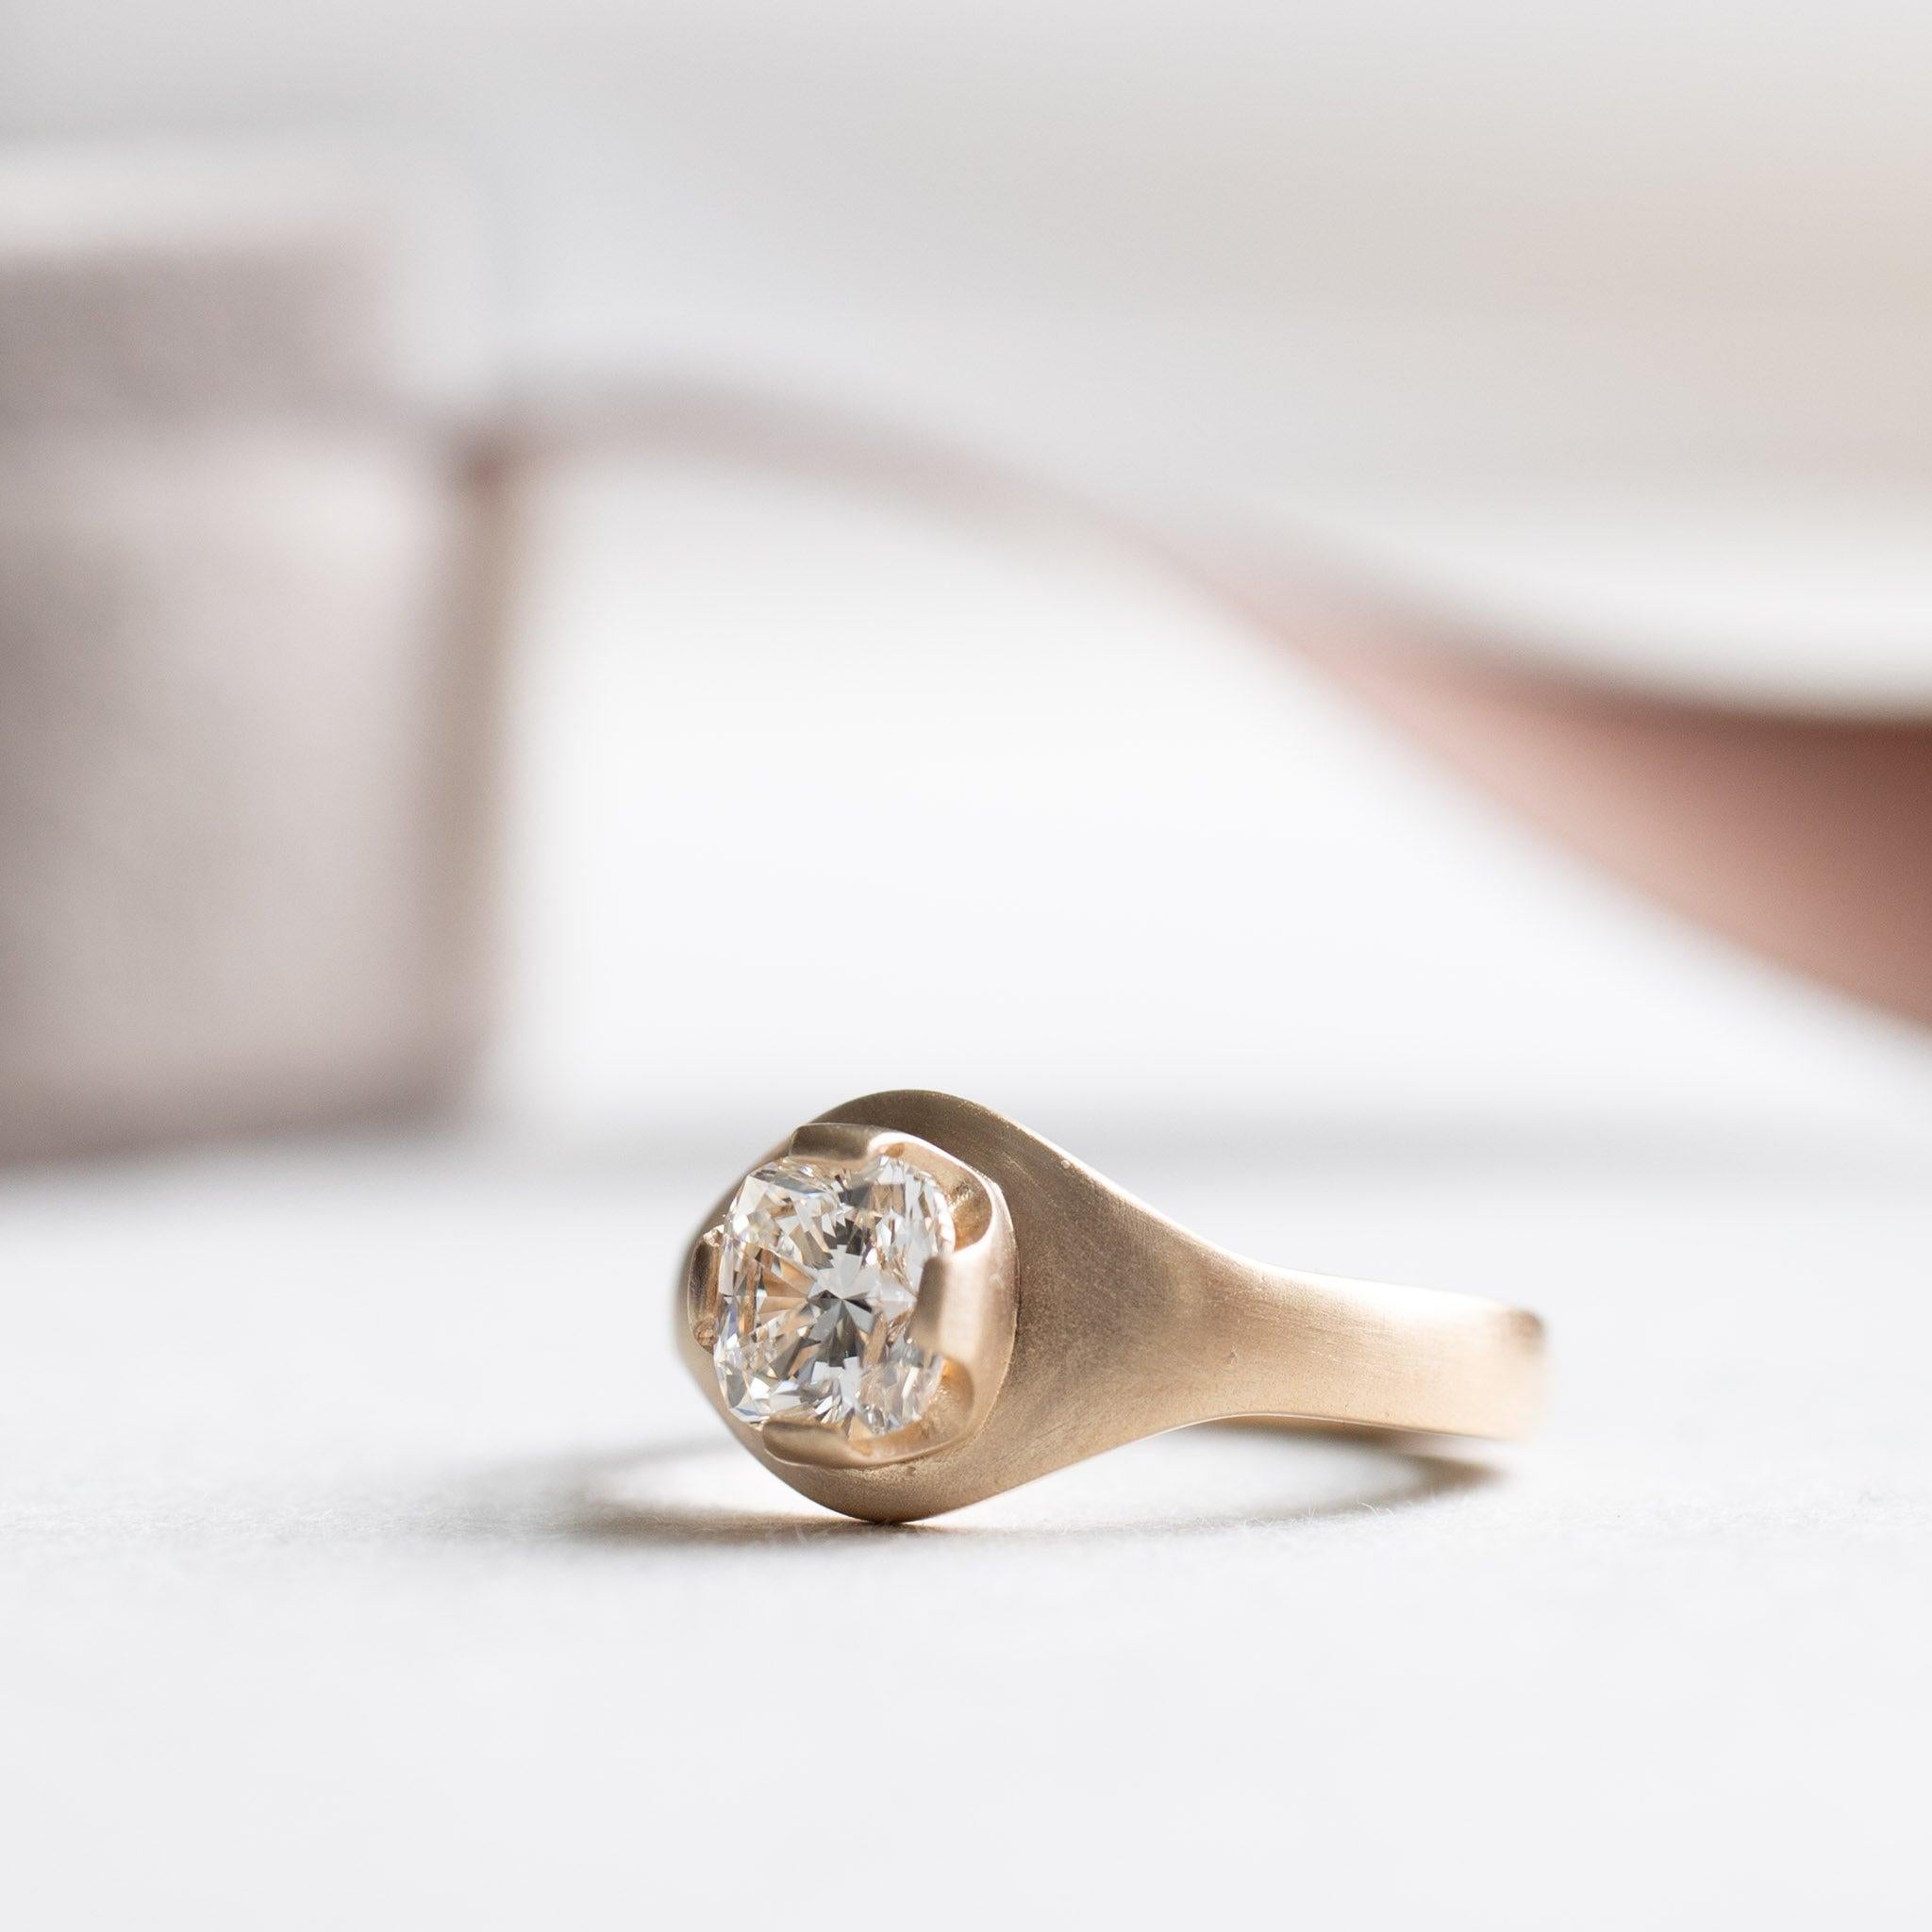 For Sale:  18 Karat Gold Diamond Signet Ring, GIA Certified 1 Carat Diamond Cocktail Ring 3